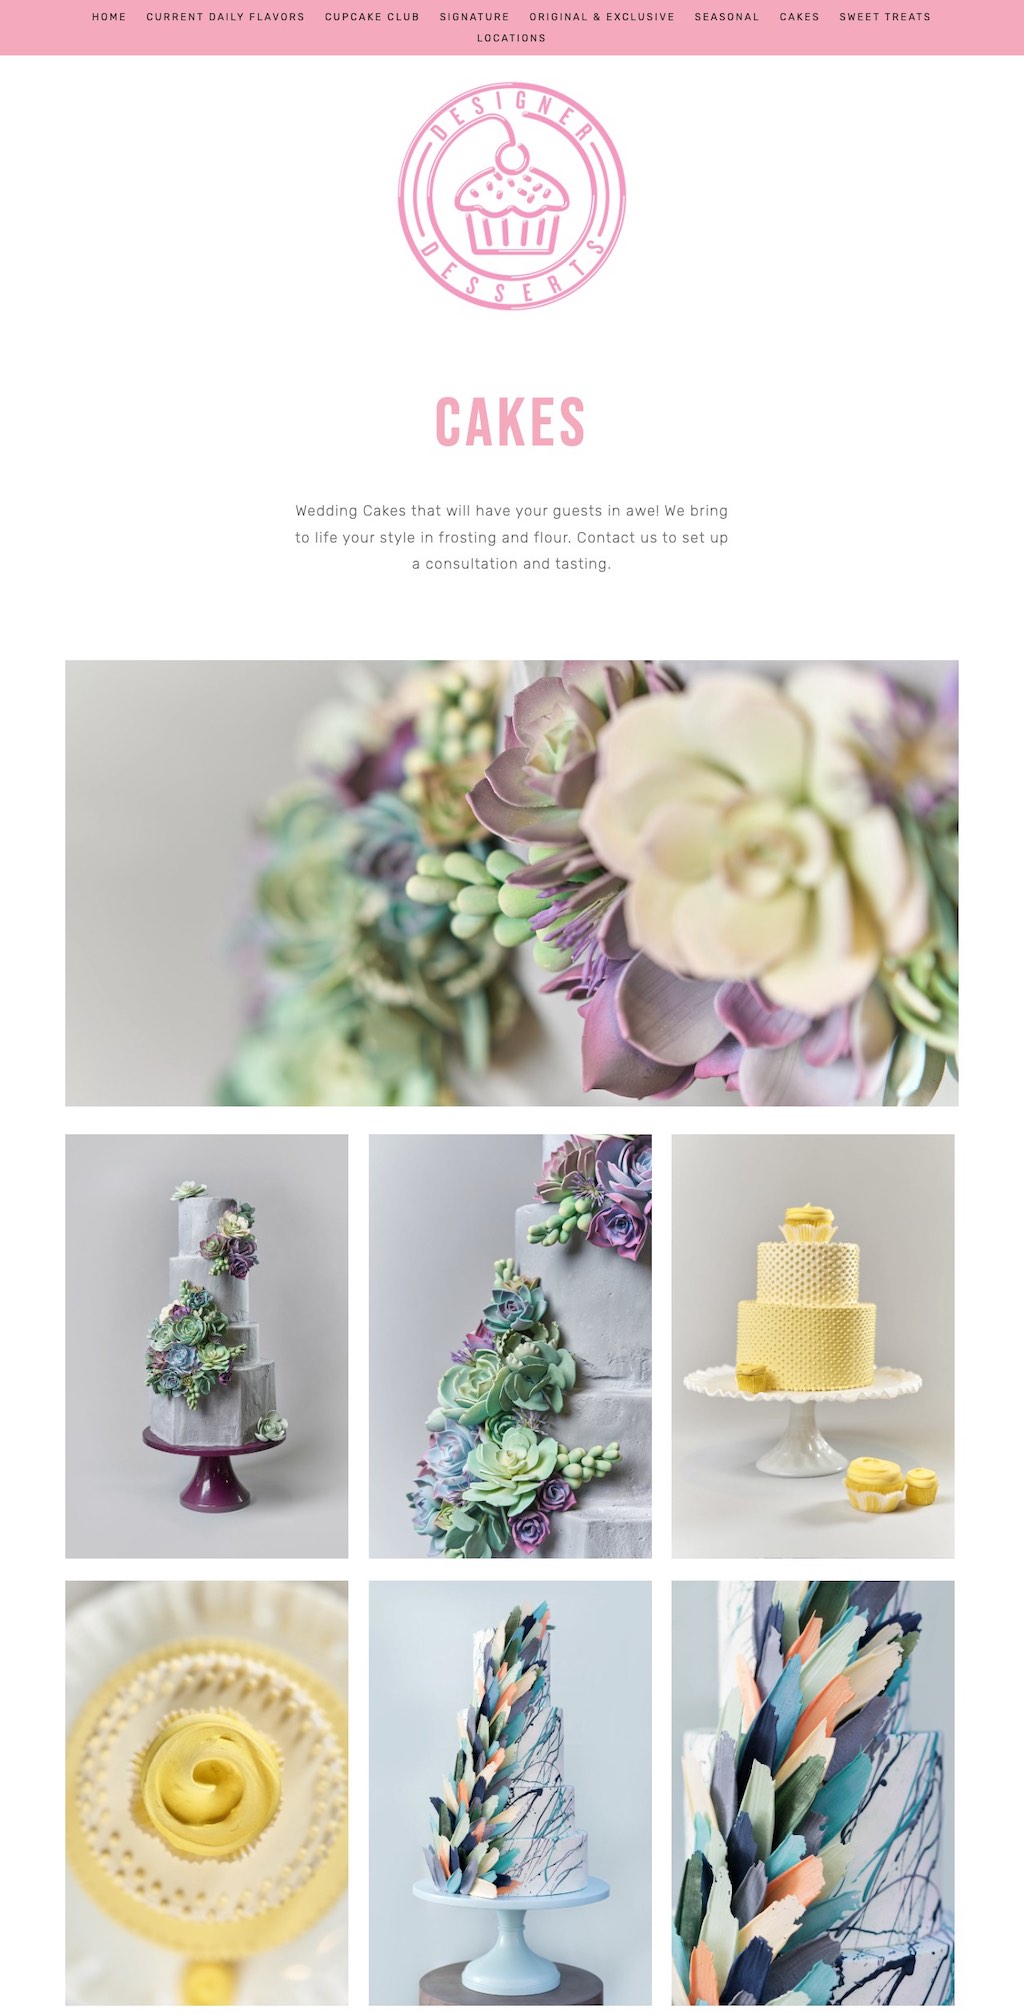 Cake Images from Designer Desserts Bakery's Website